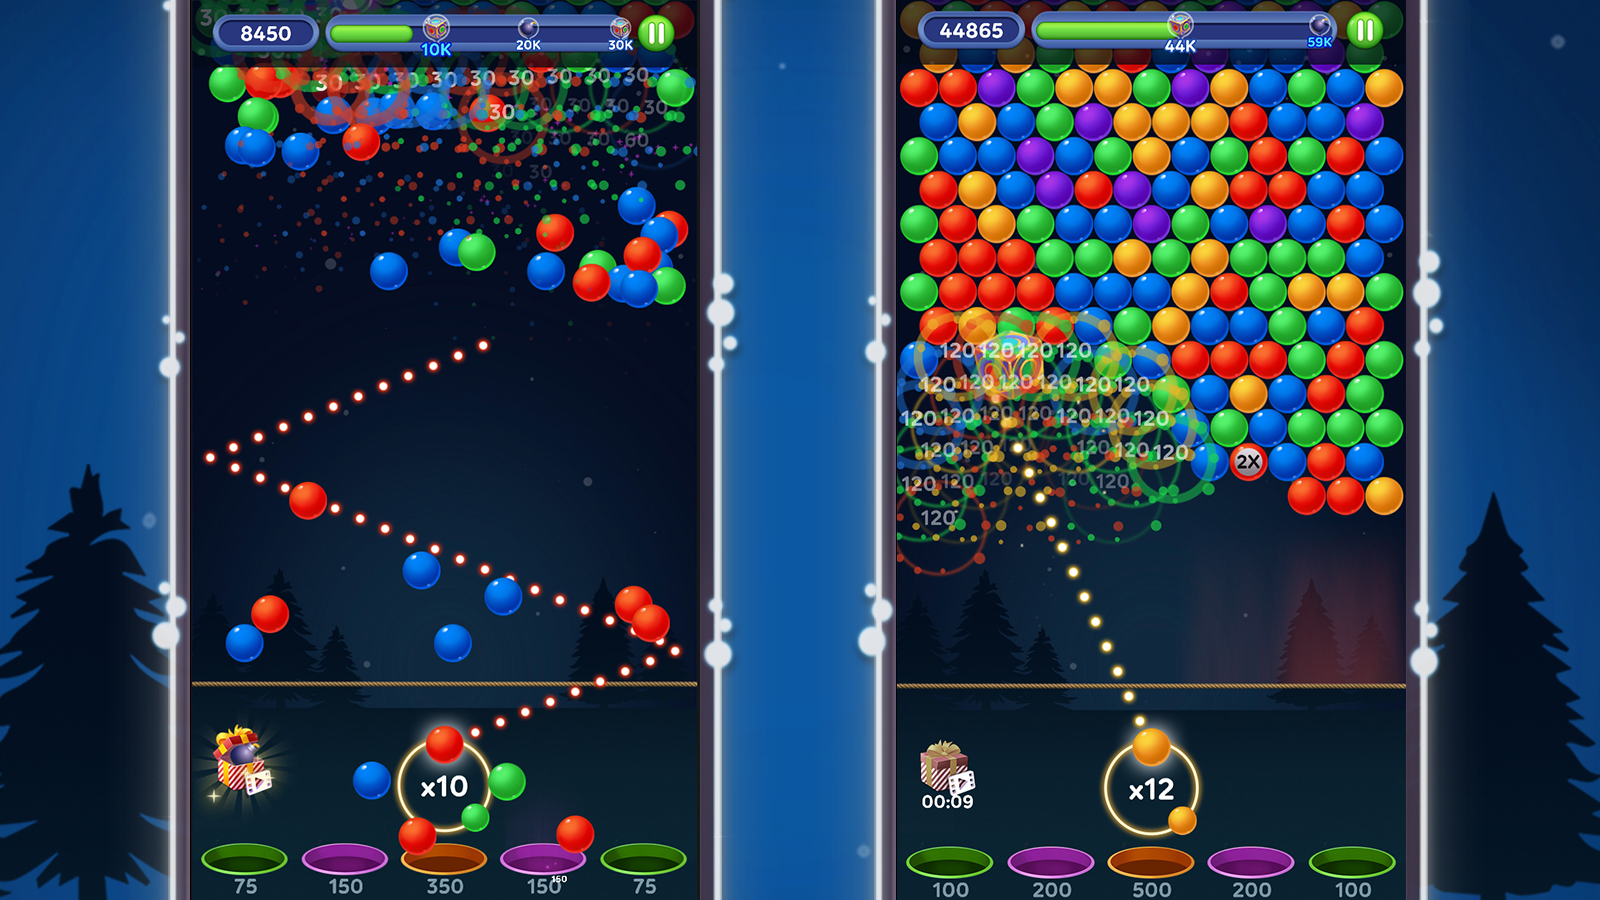 Bubble Master — Jogue online gratuitamente em Yandex Games